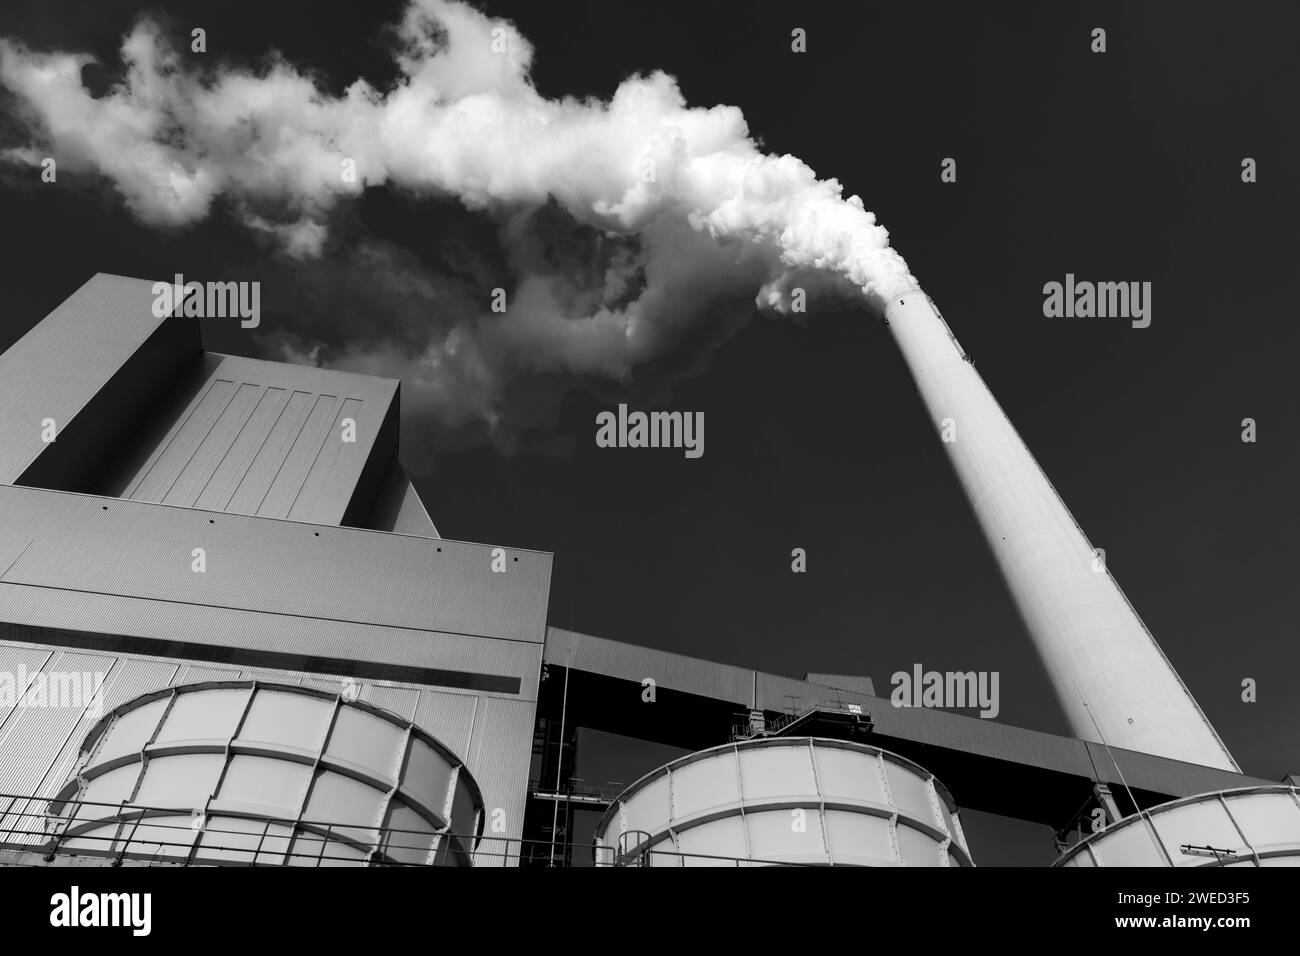 Image symbolique, redressement énergétique, grande centrale électrique de Mannheim, combustibles fossiles, cheminée fumante, installation industrielle, cheminée, fumée, charbon, noir et blanc Banque D'Images